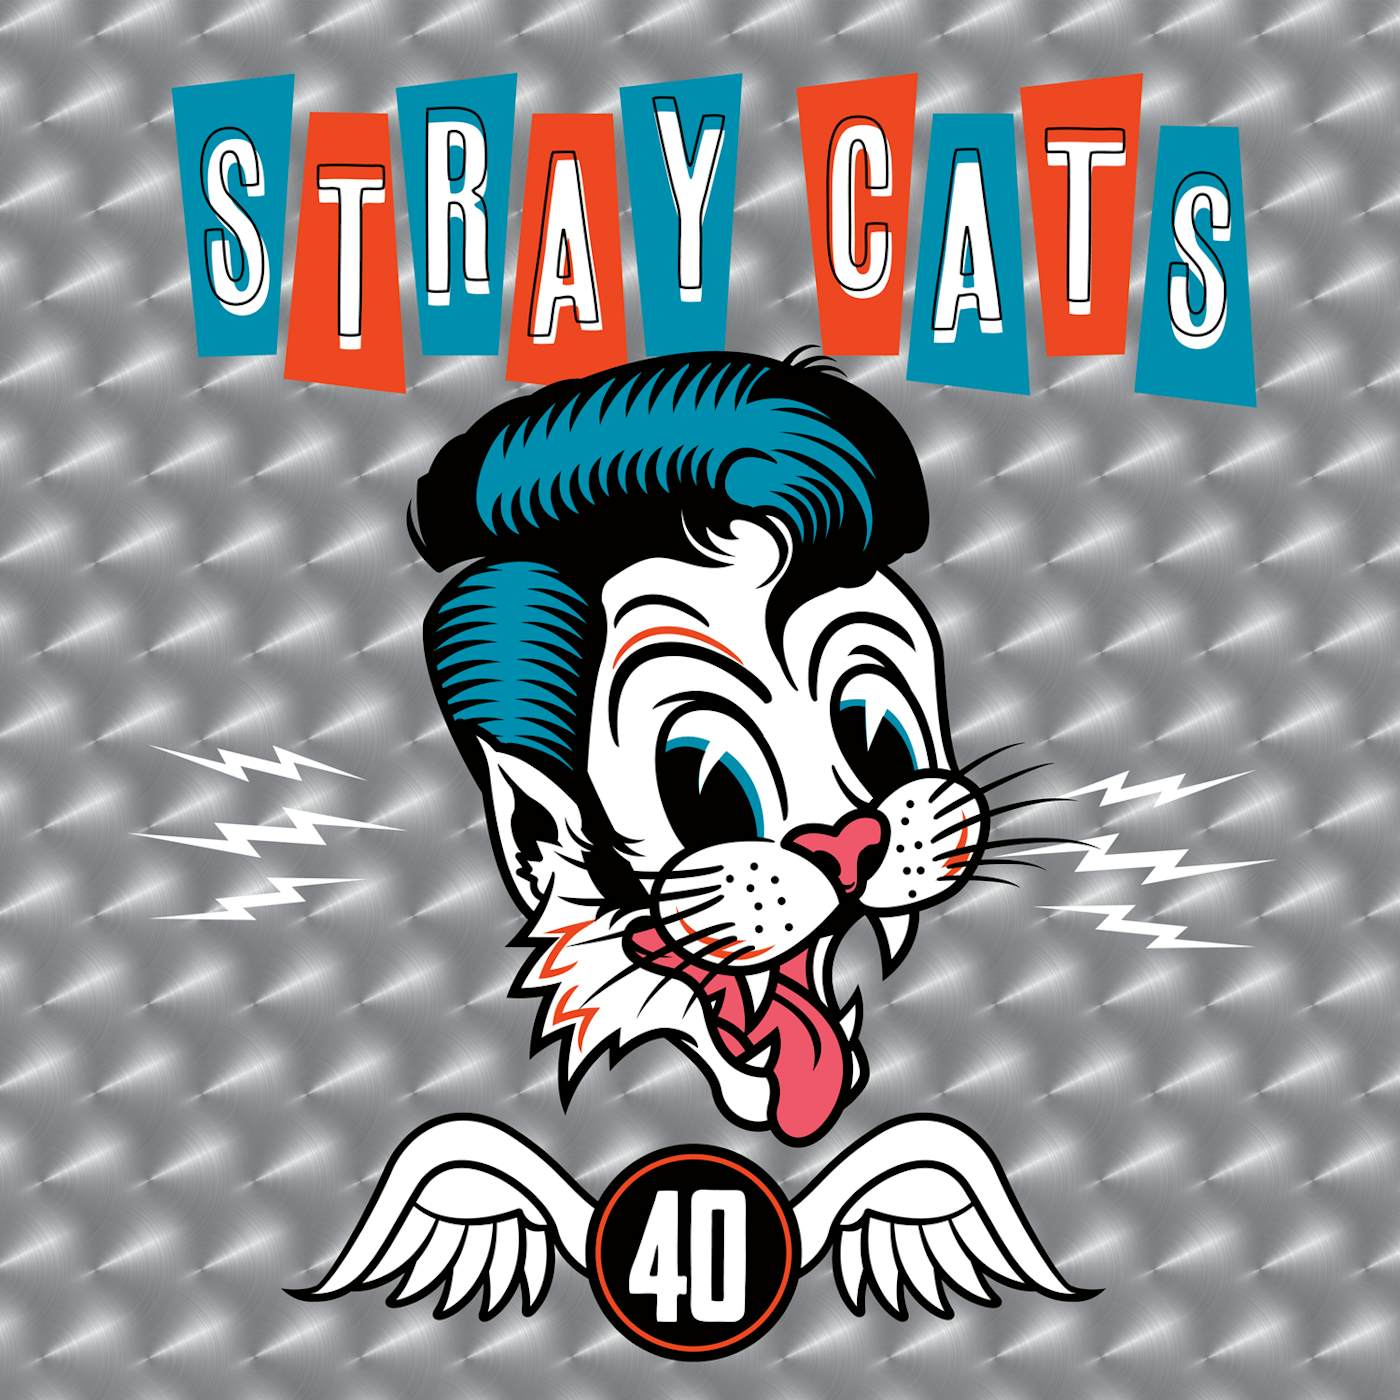 Stray Cats 40 CD